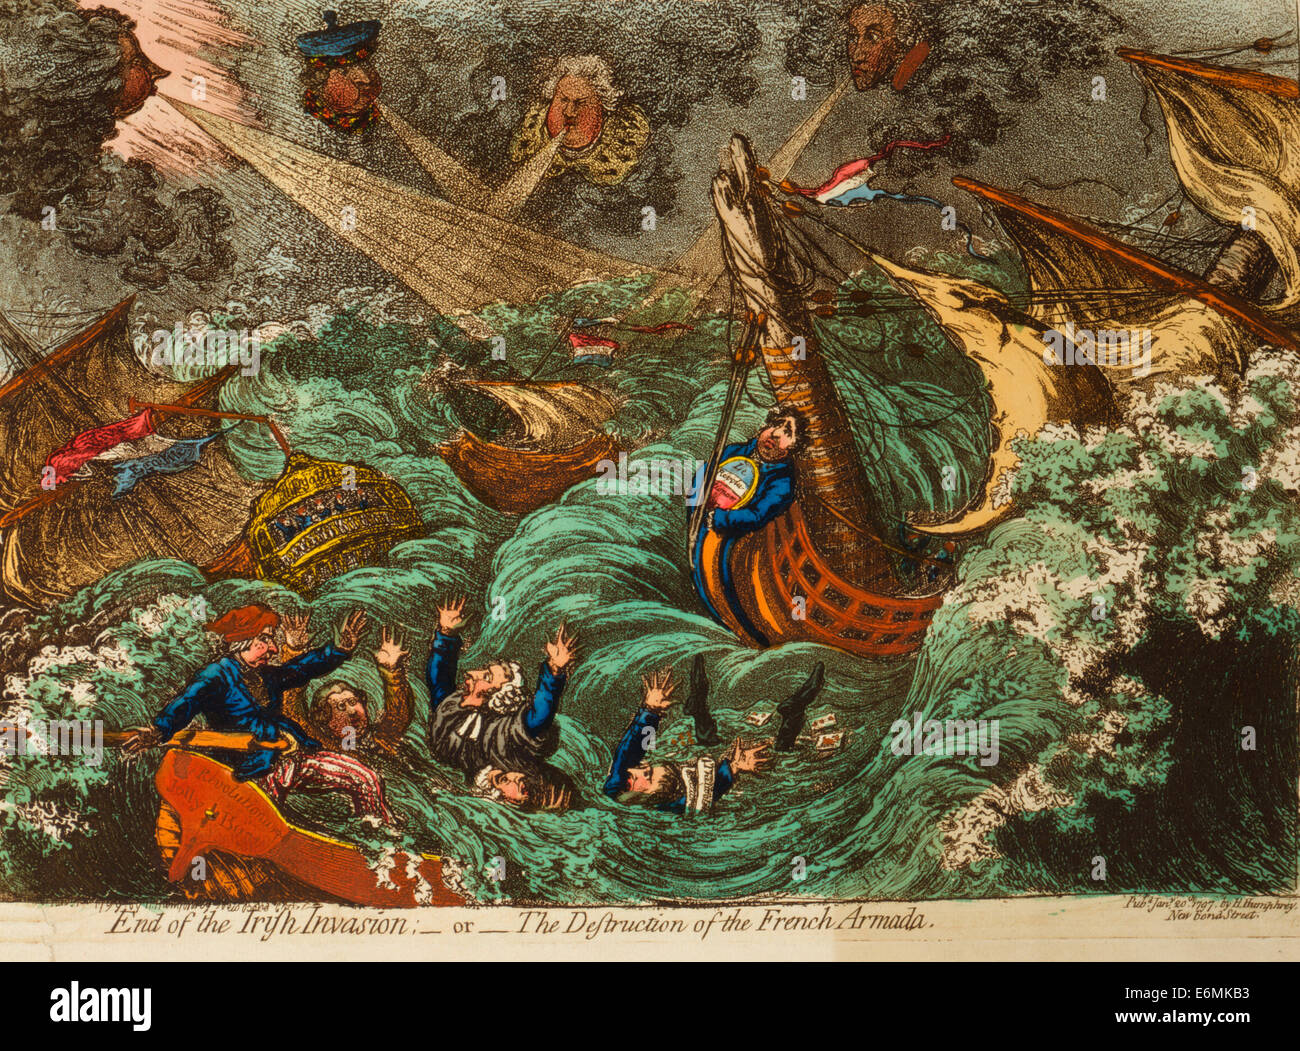 Fin de l'invasion de l'Irlande : - ou - la destruction de l'Armada française. Caricature politique, 1797 Banque D'Images